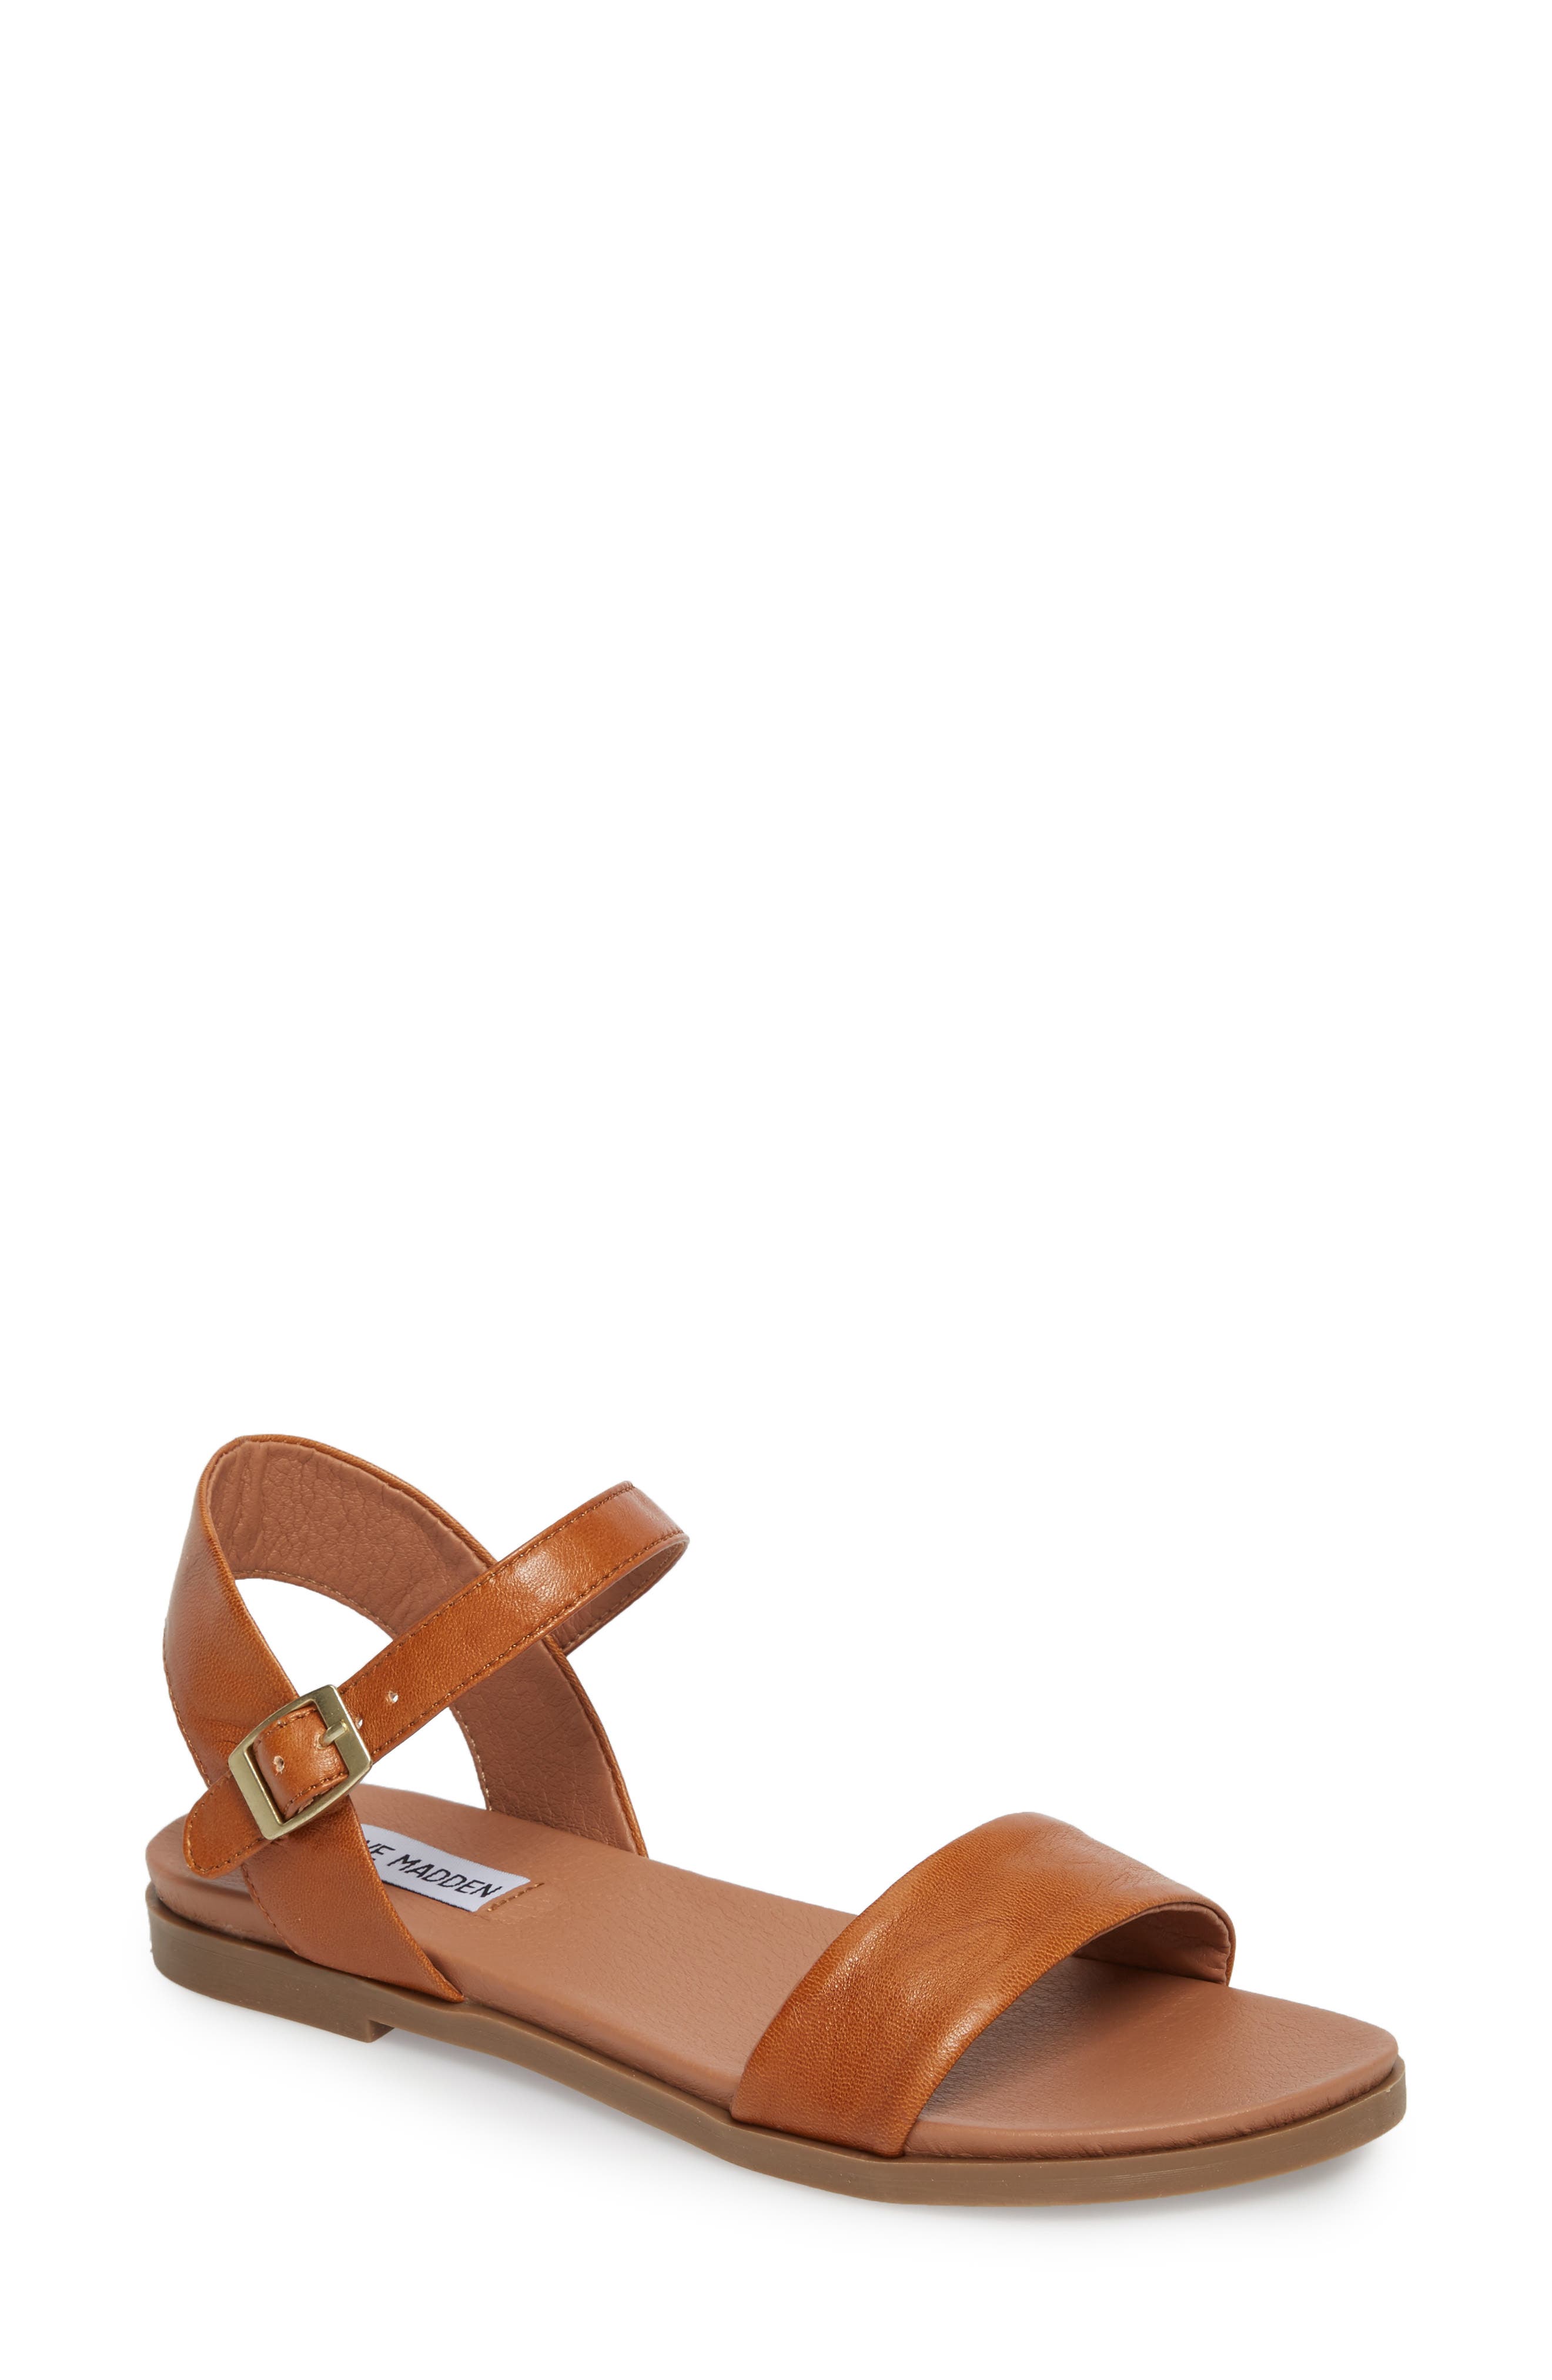 brown tan sandals